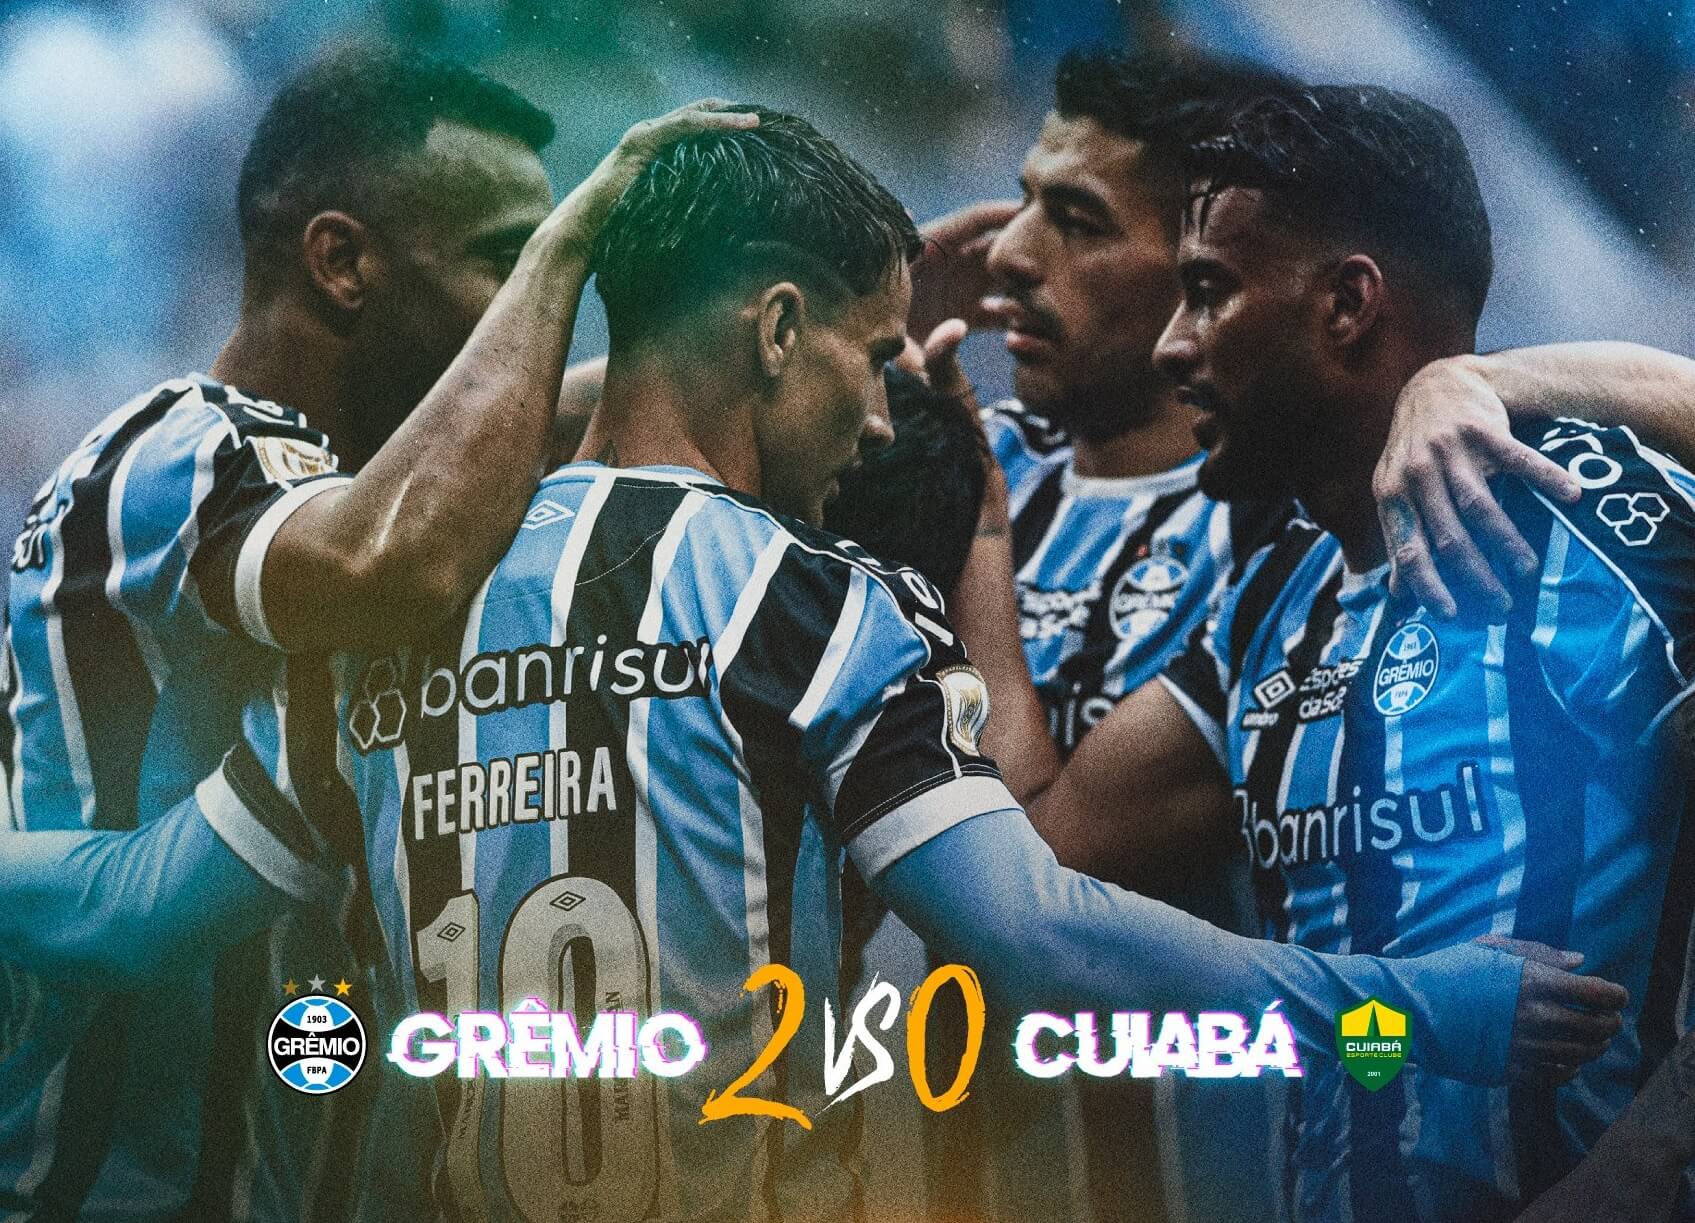 Grêmio vs Fortaleza: A Clash of Titans on the Pitch